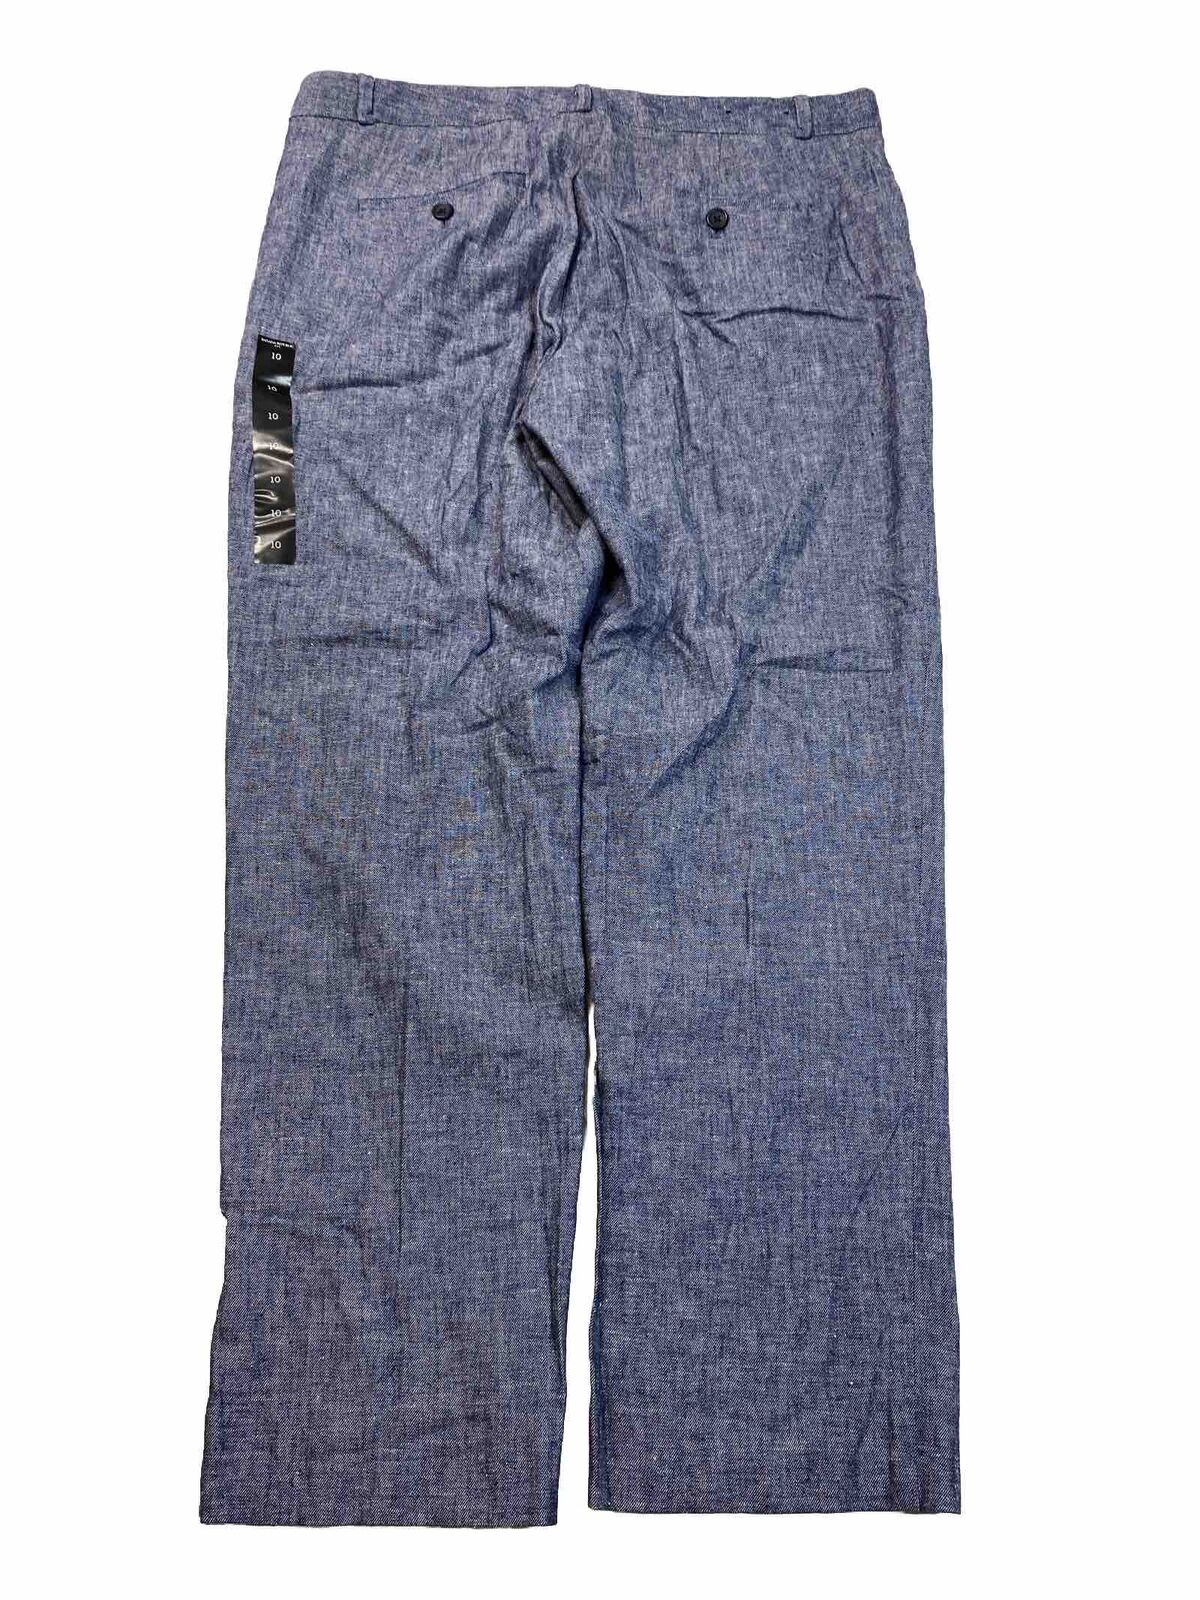 NEW Banana Republic Women's Blue Avery Linen Blend Pants - 10